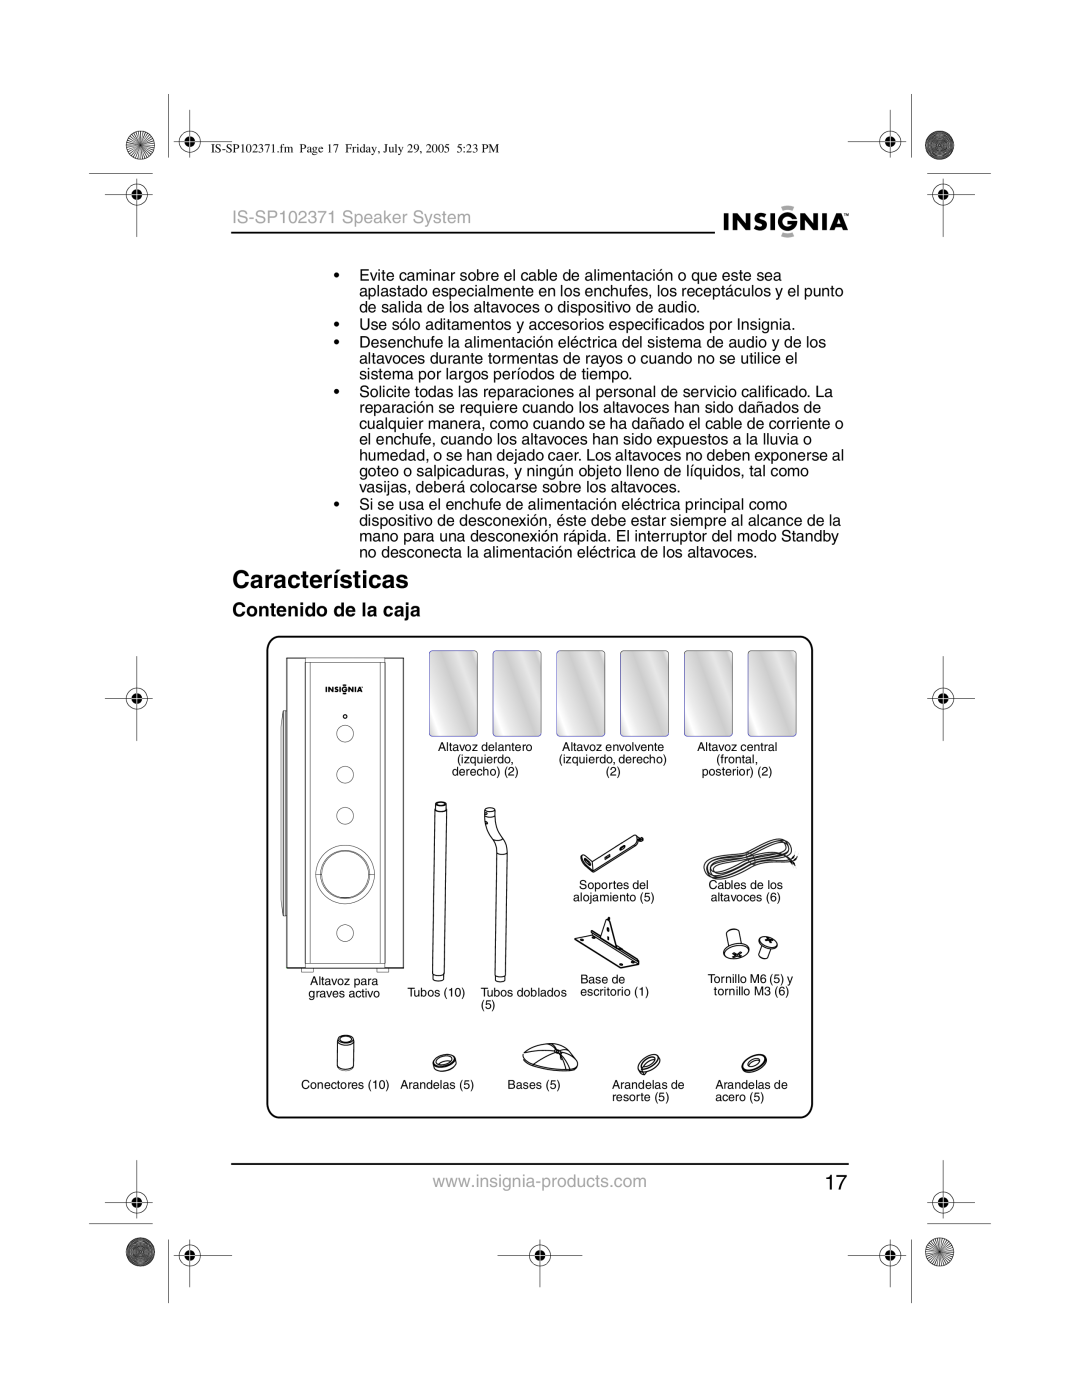 Insignia manual Características, Contenido de la caja, IS-SP102371Speaker System 